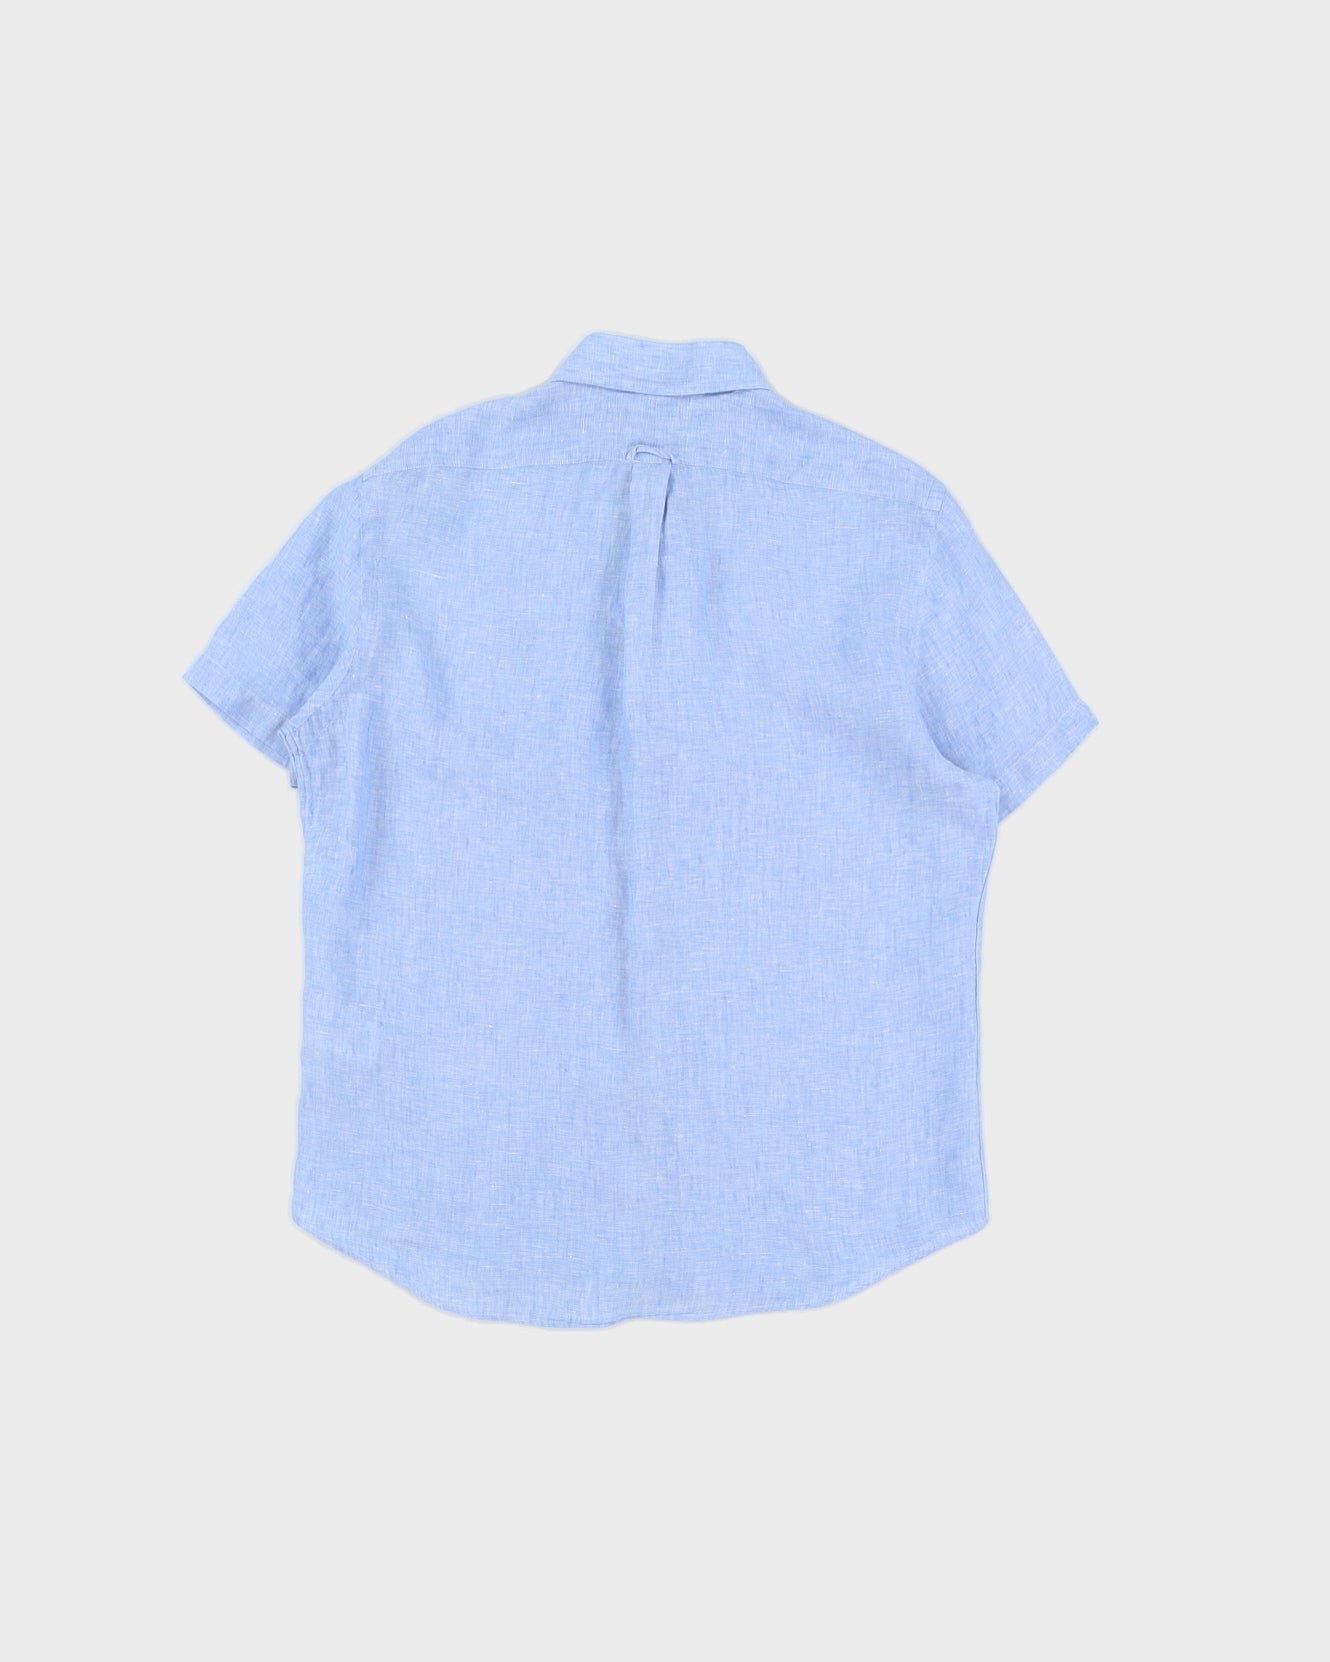 Ralph Lauren Blue Linen Short Sleeved Shirt - M